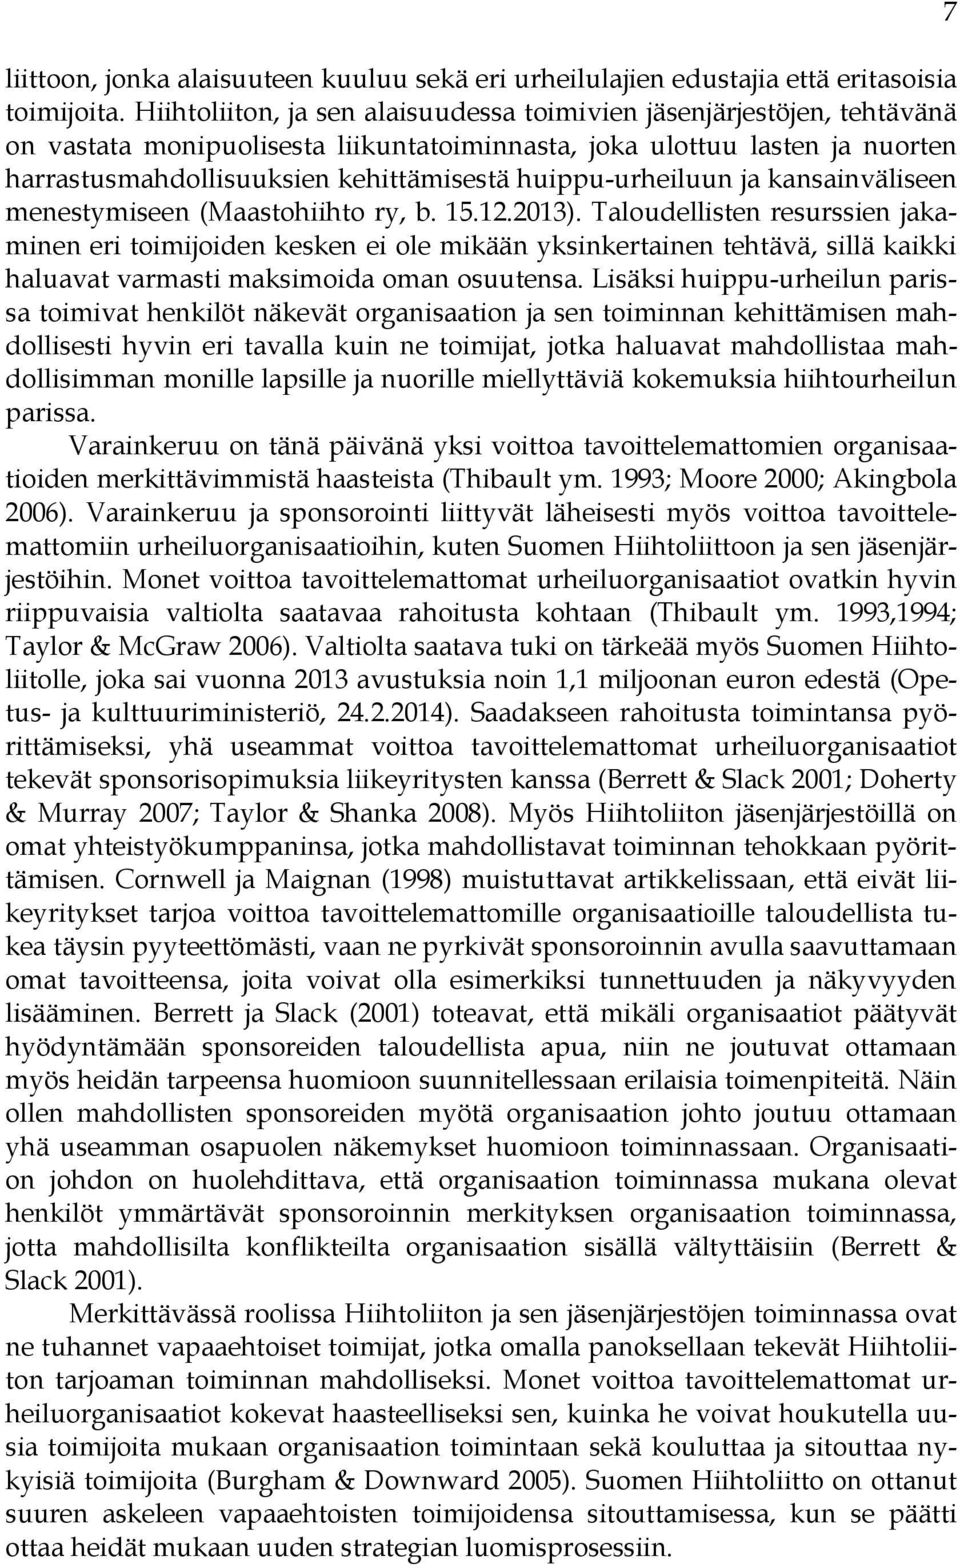 huippu-urheiluun ja kansainväliseen menestymiseen (Maastohiihto ry, b. 15.12.2013).